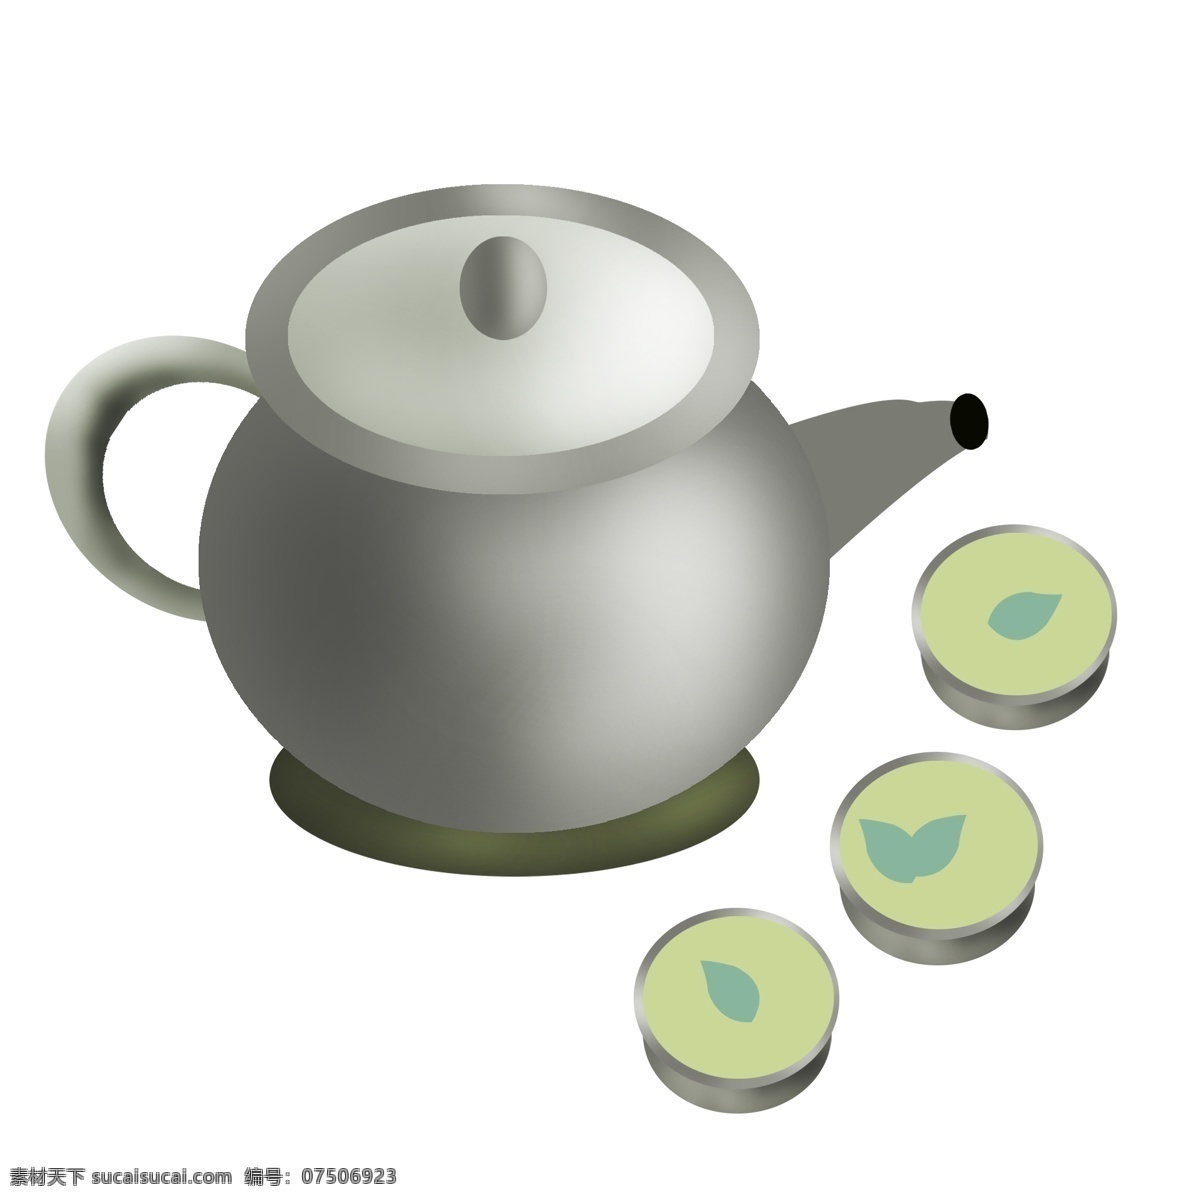 三 碗 茶 茶文化 插画 三碗茶 灰色茶壶茶杯 饮茶茶水 喝茶 茶叶冲茶泡茶 健康养生 茶具插画